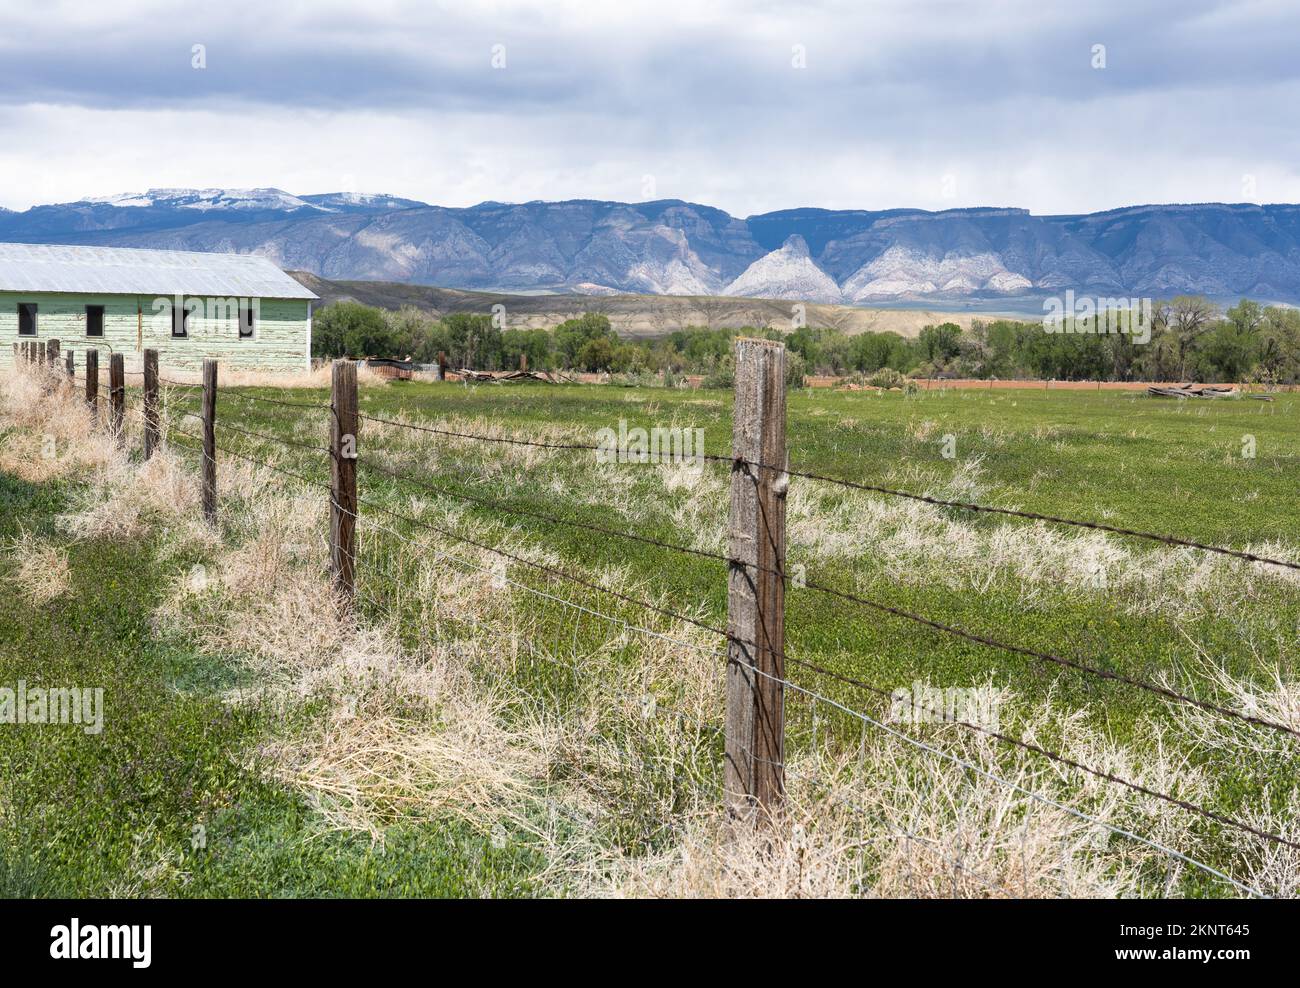 Alte grün bemalte Bauernhöfe mit Big Horn Mountains und Moränen in der Ferne. Siehe Weide und Stacheldrahtzaun im Vordergrund. Stockfoto